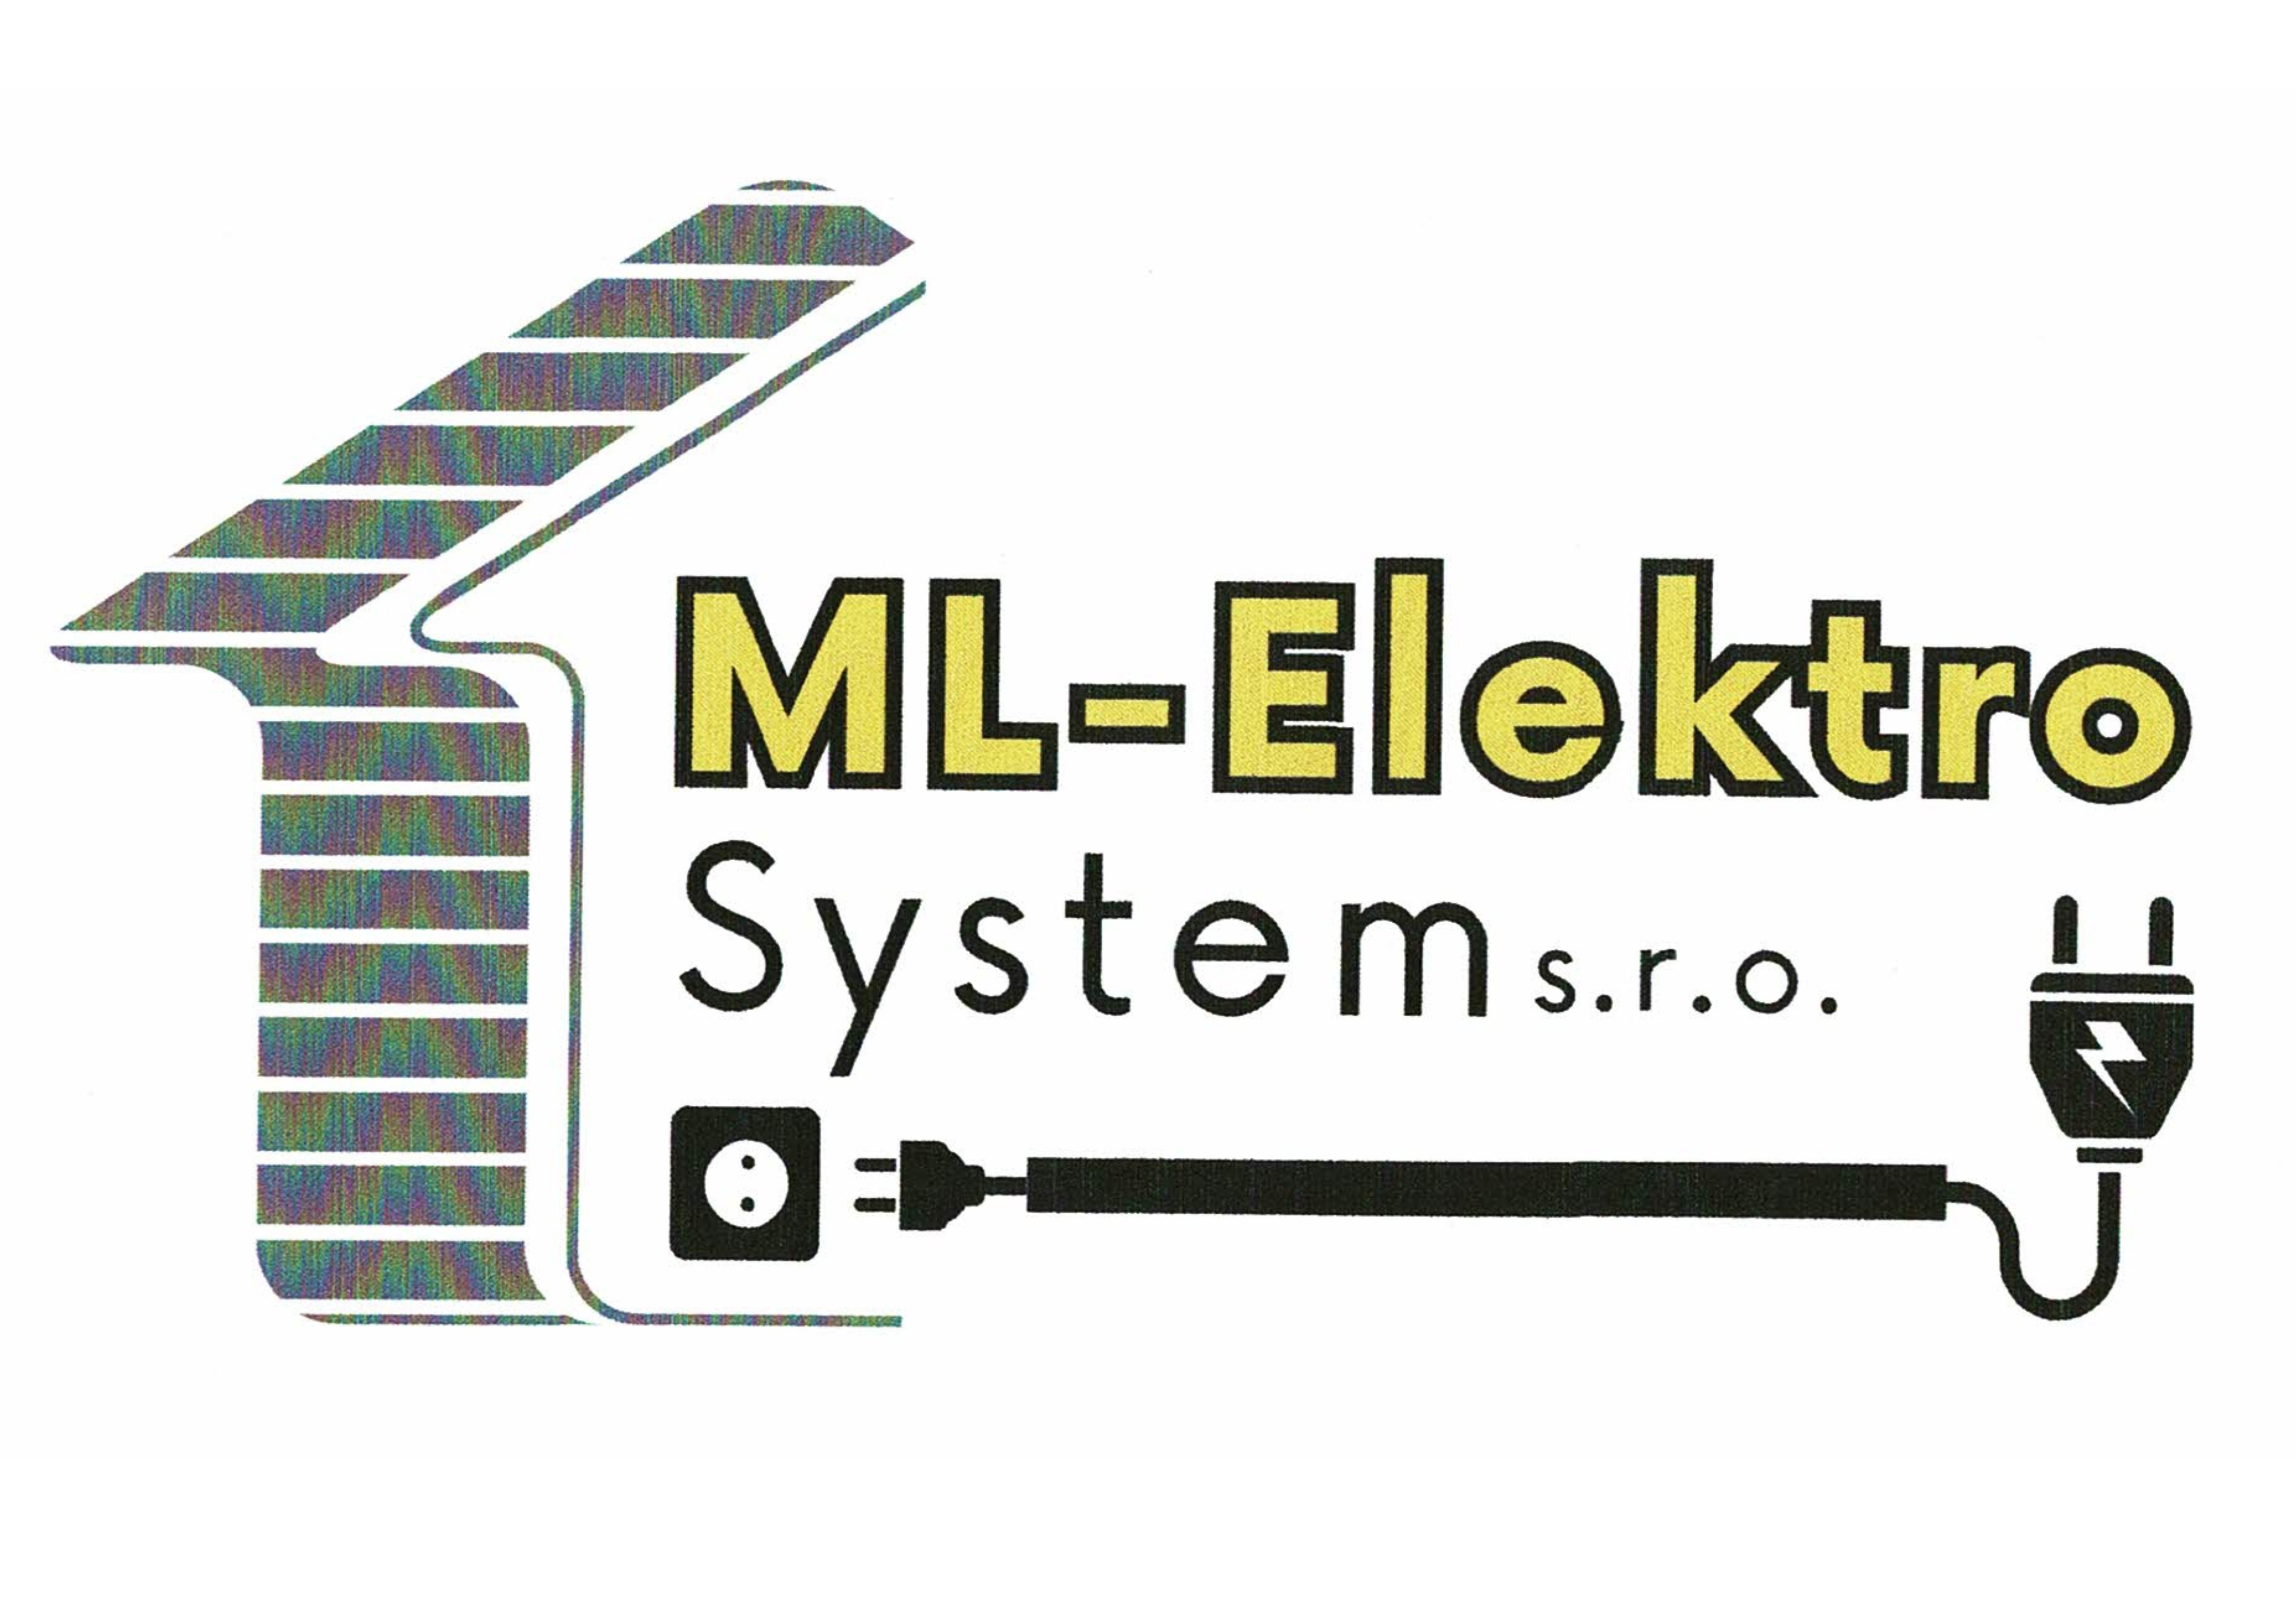 ML-elektro systemy s.r.o.